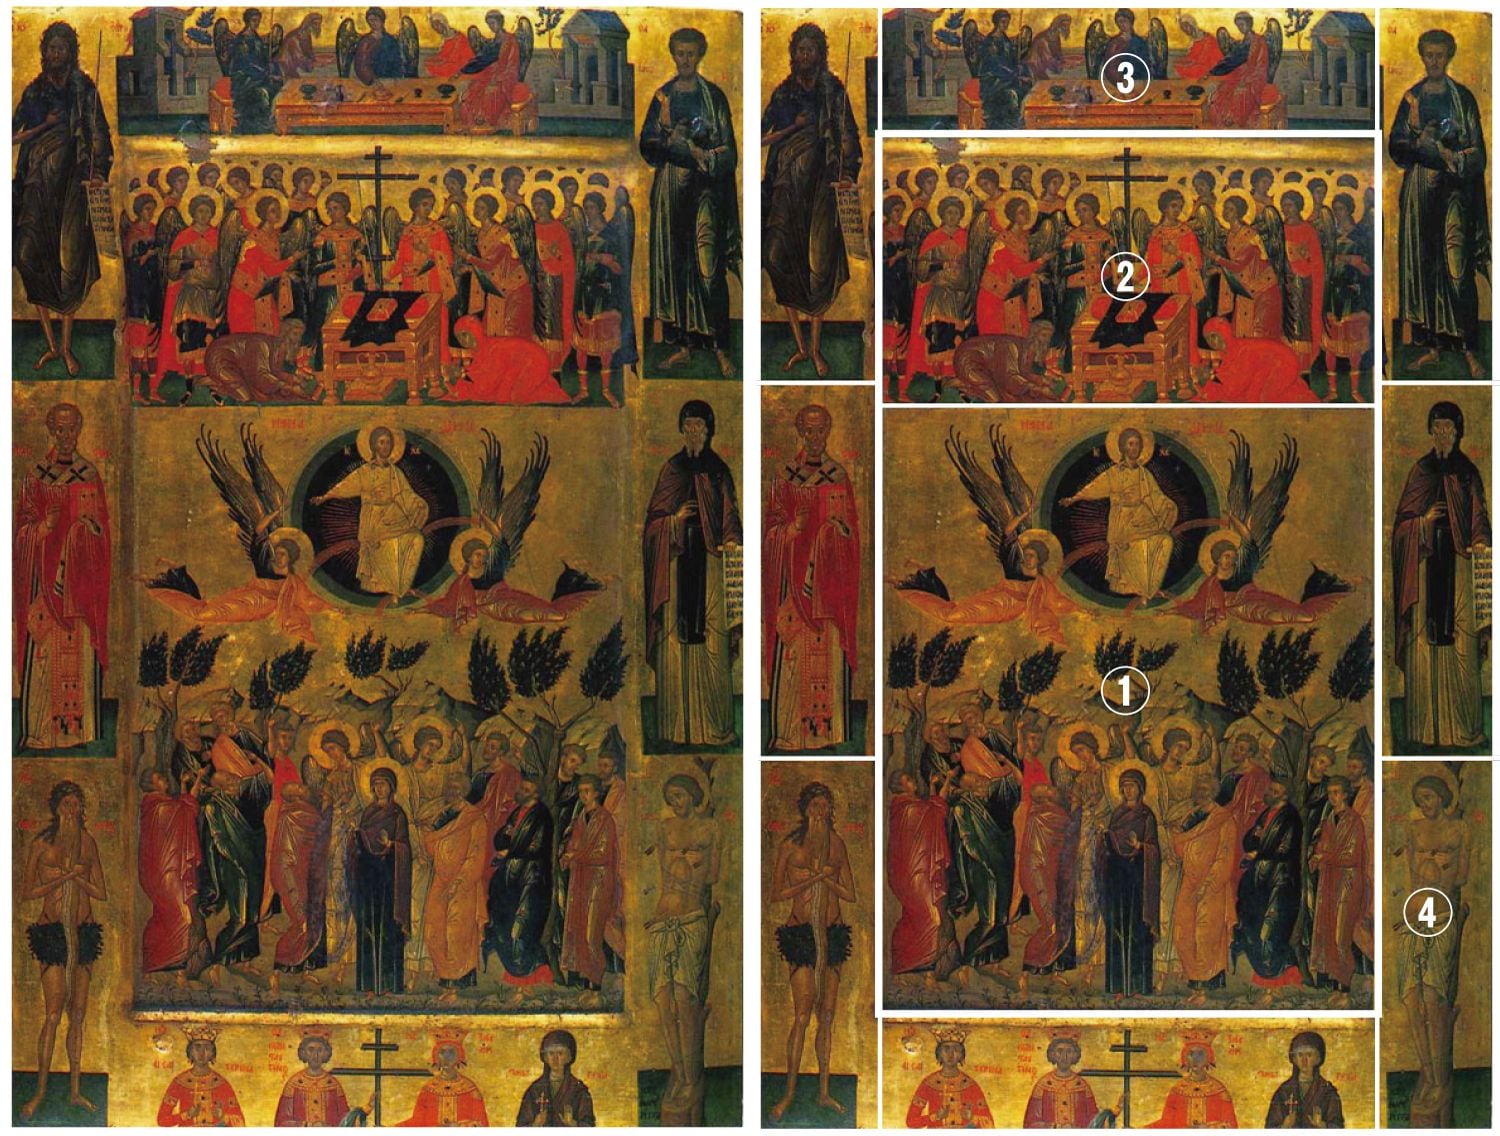 アートとは異なる存在の「宗教画」 東西文化が同居する聖像画の見方を